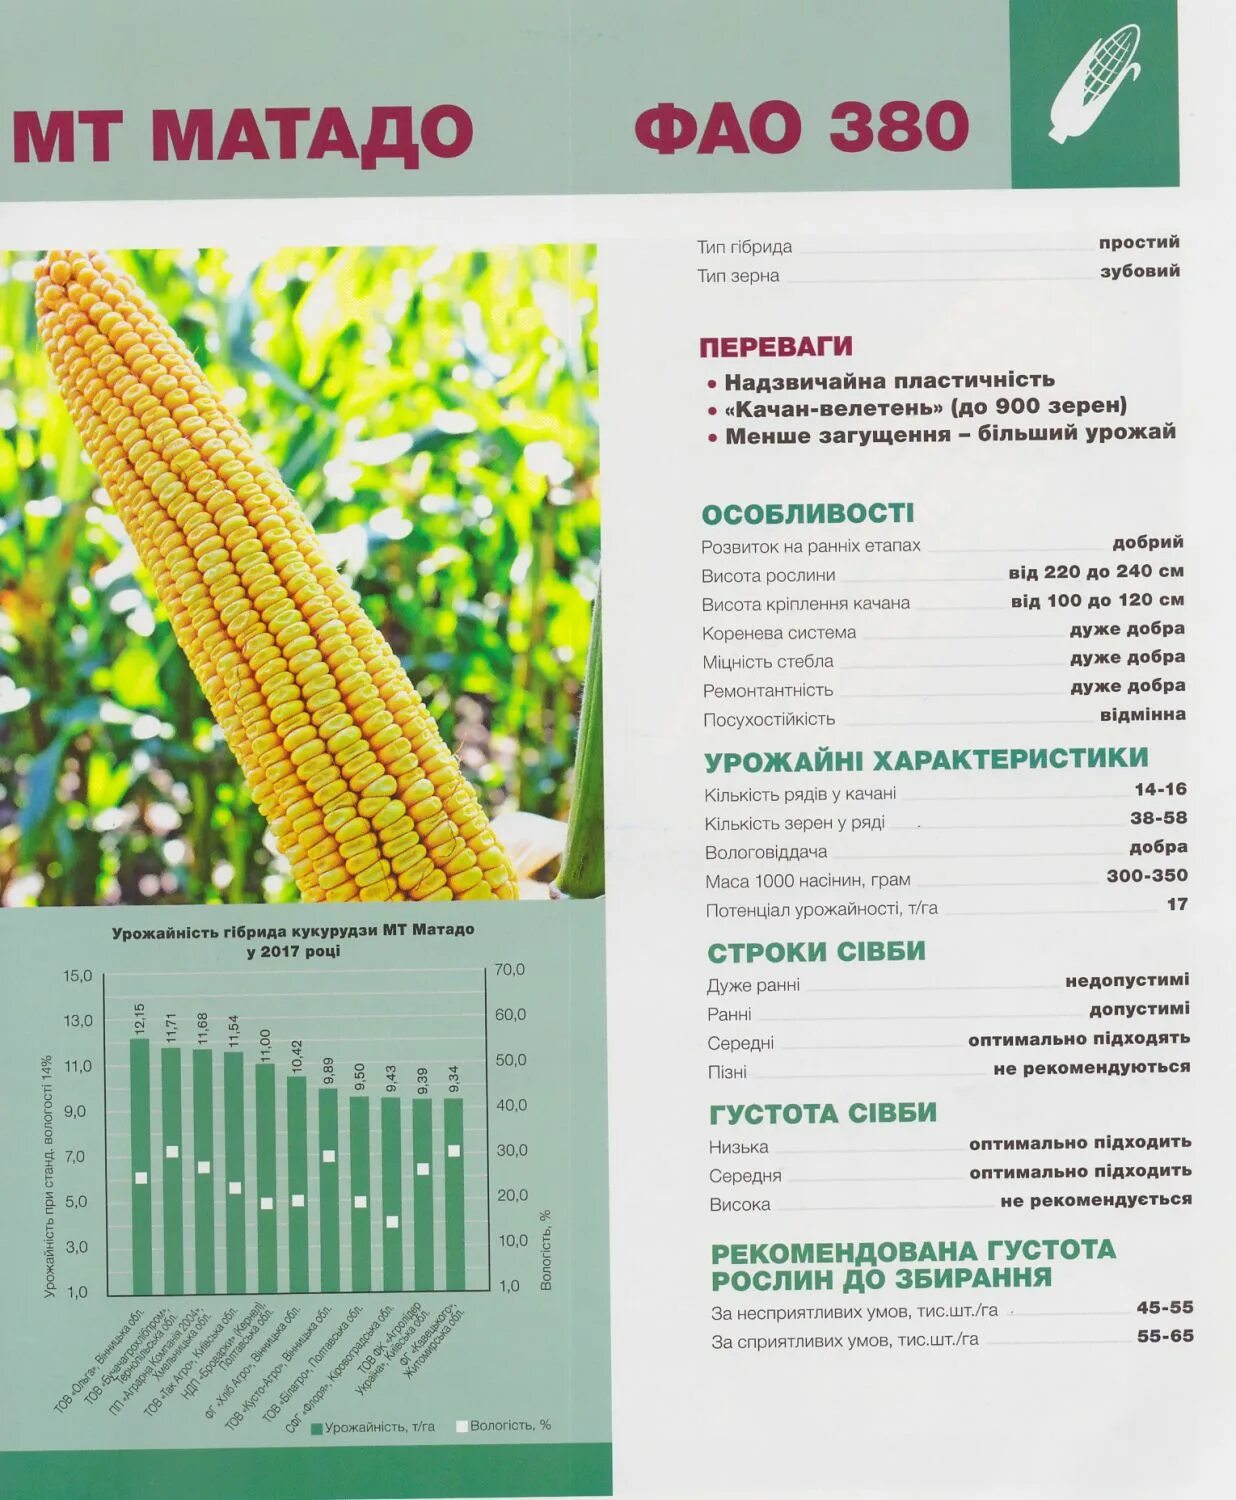 Семена кукурузы какую температуру. Китайская кукуруза семена. Семена кукурузы Япония. Размер семян кукурузы. Калибровка семян кукурузы.